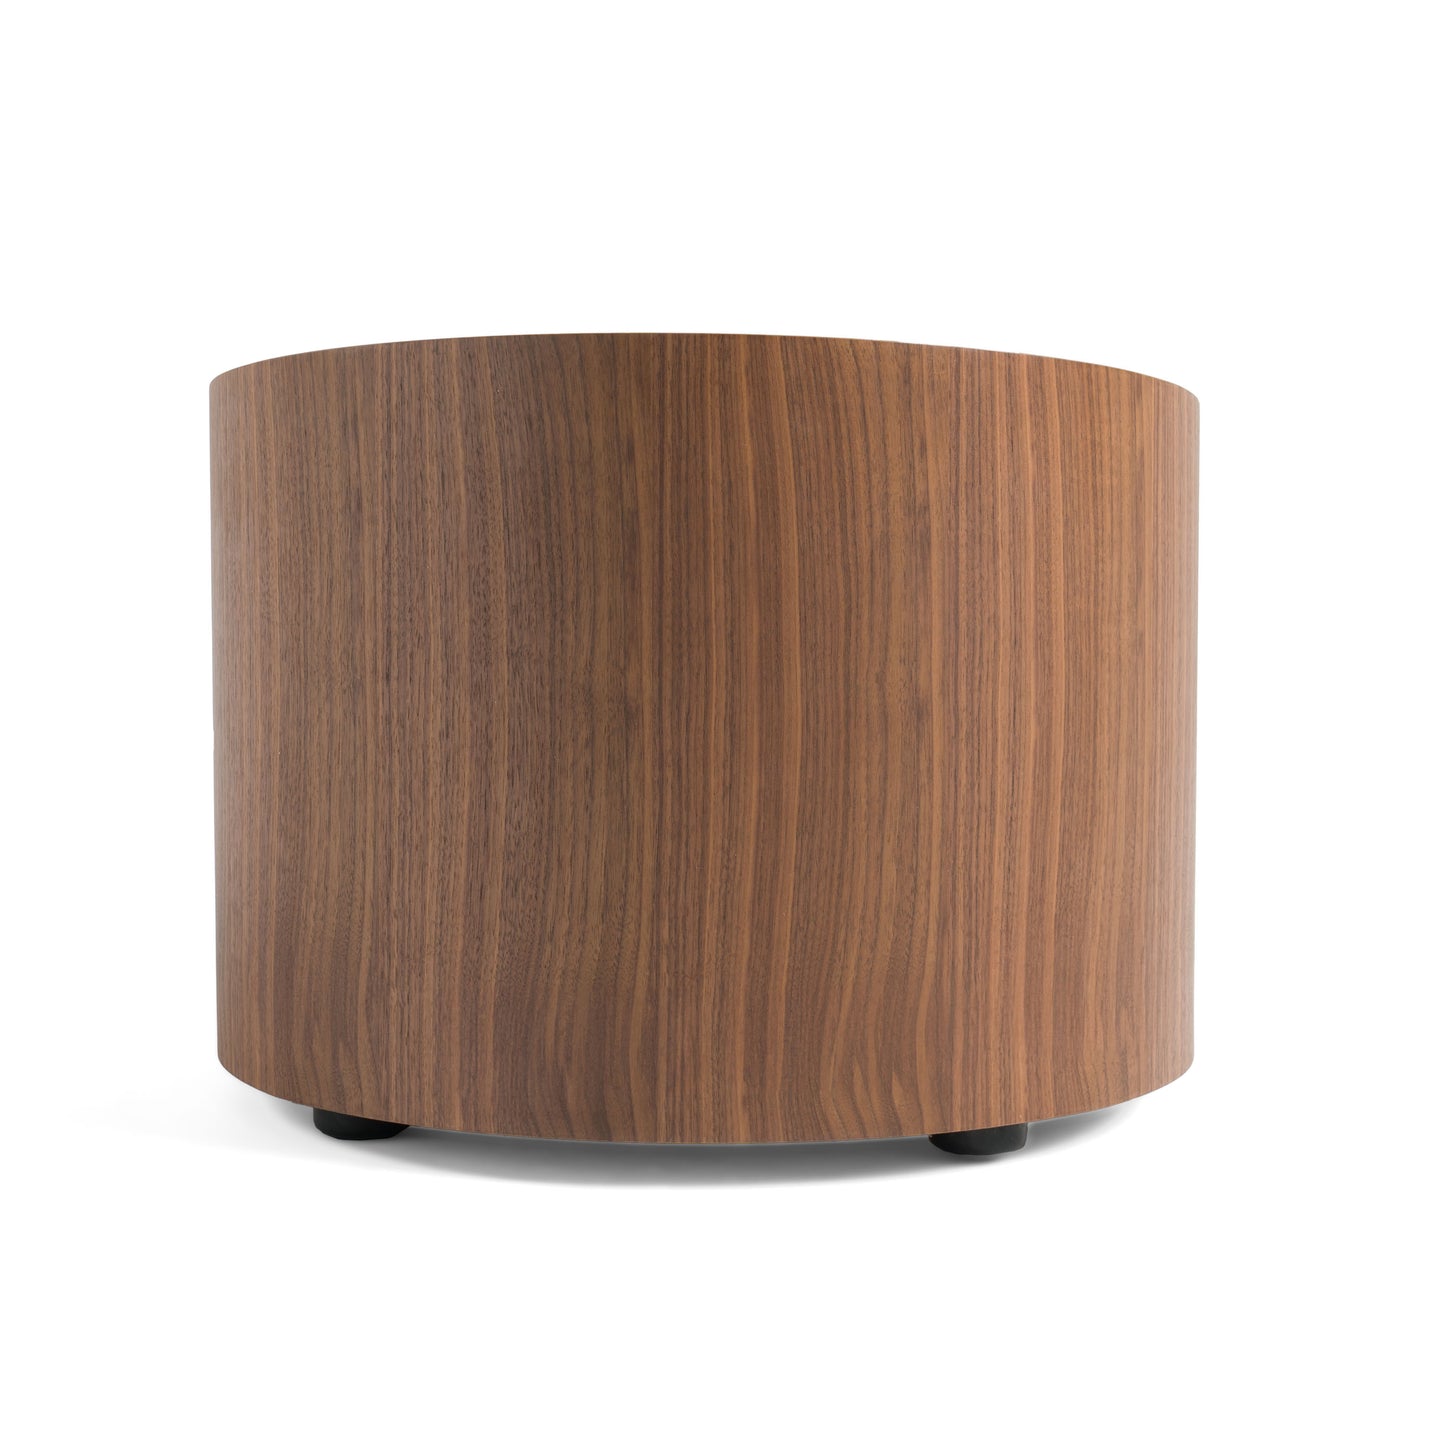 Modrest Geneva - Modern Walnut Round Nightstand